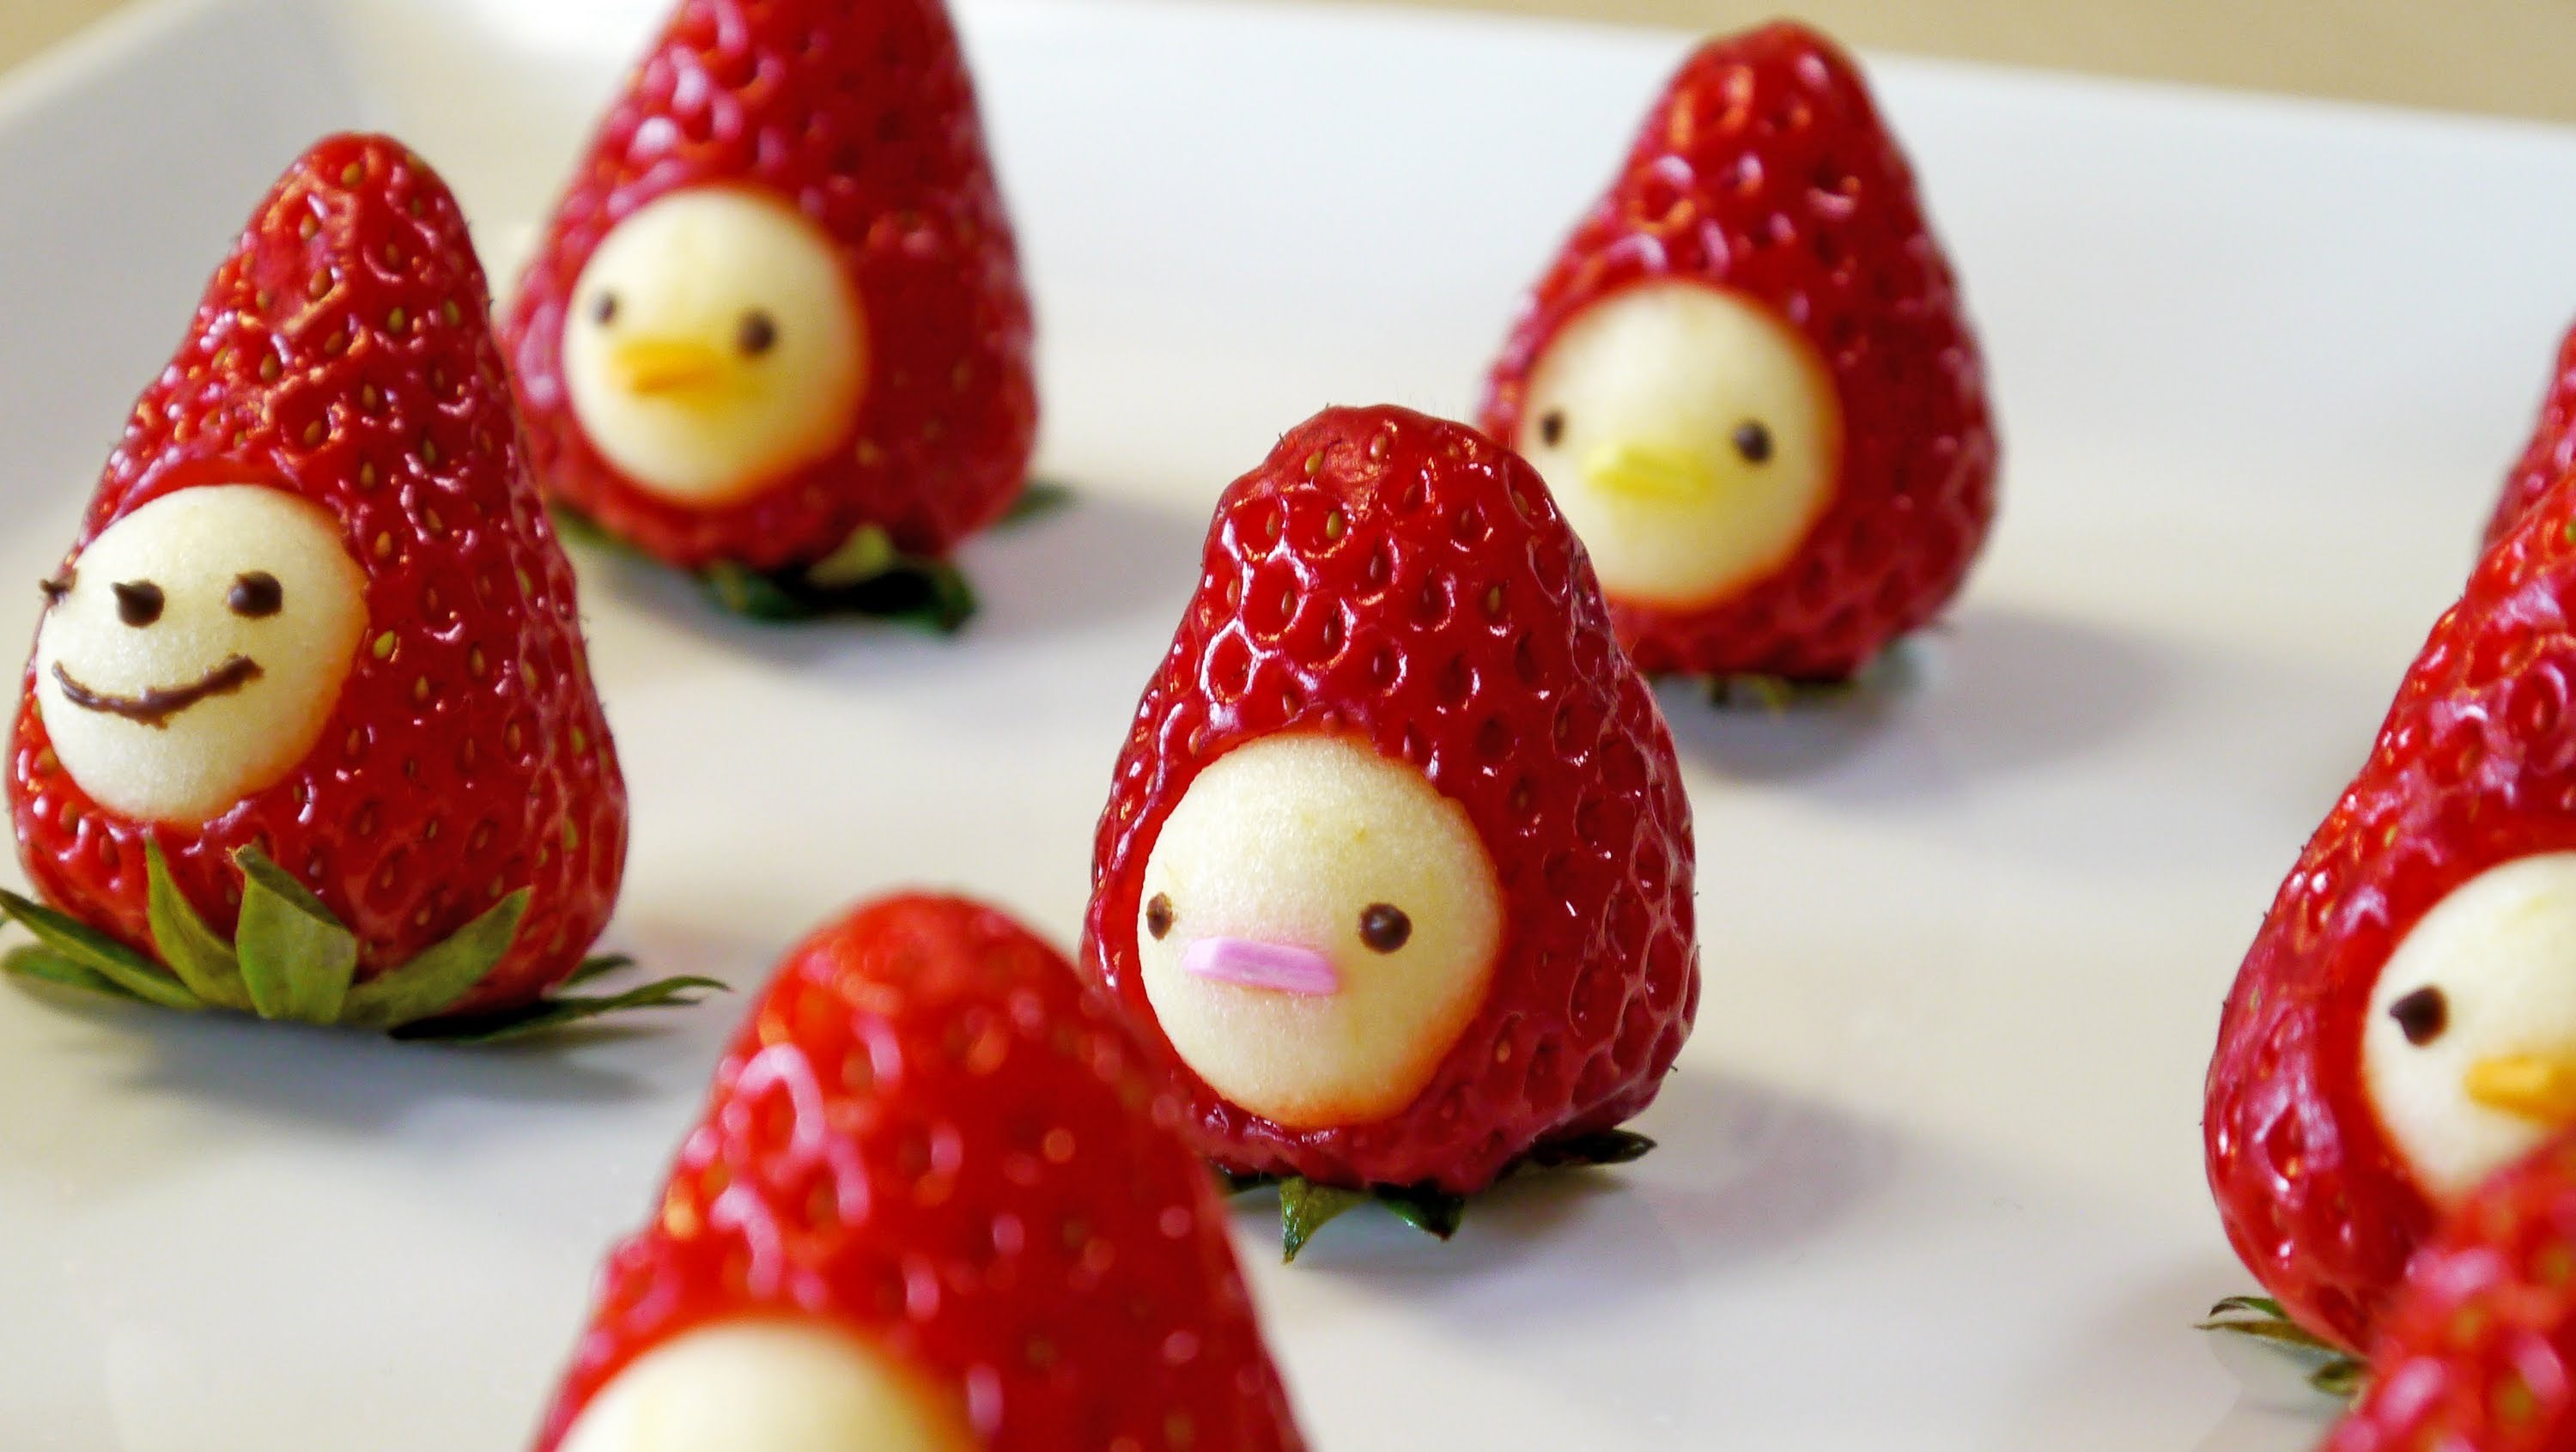 Strawberry background kawaii